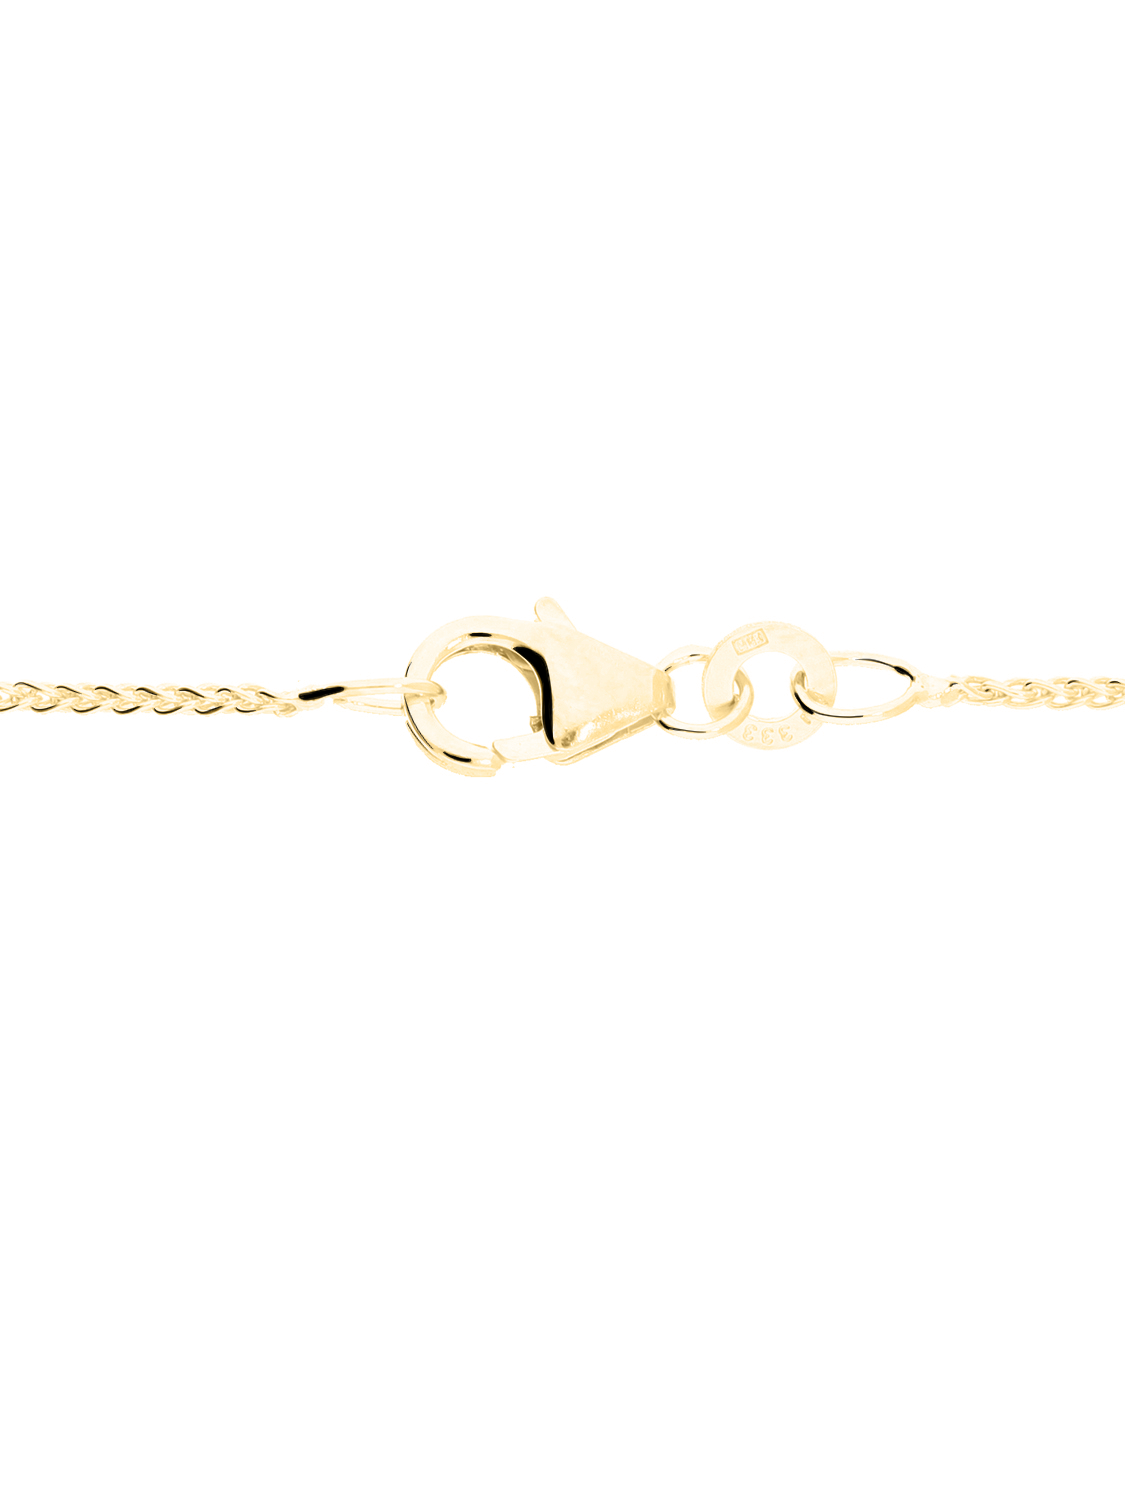 Trixi - Halskette 333 Gelbgold Karabiner - Breite 1,1 mm -  Länge 40 cm